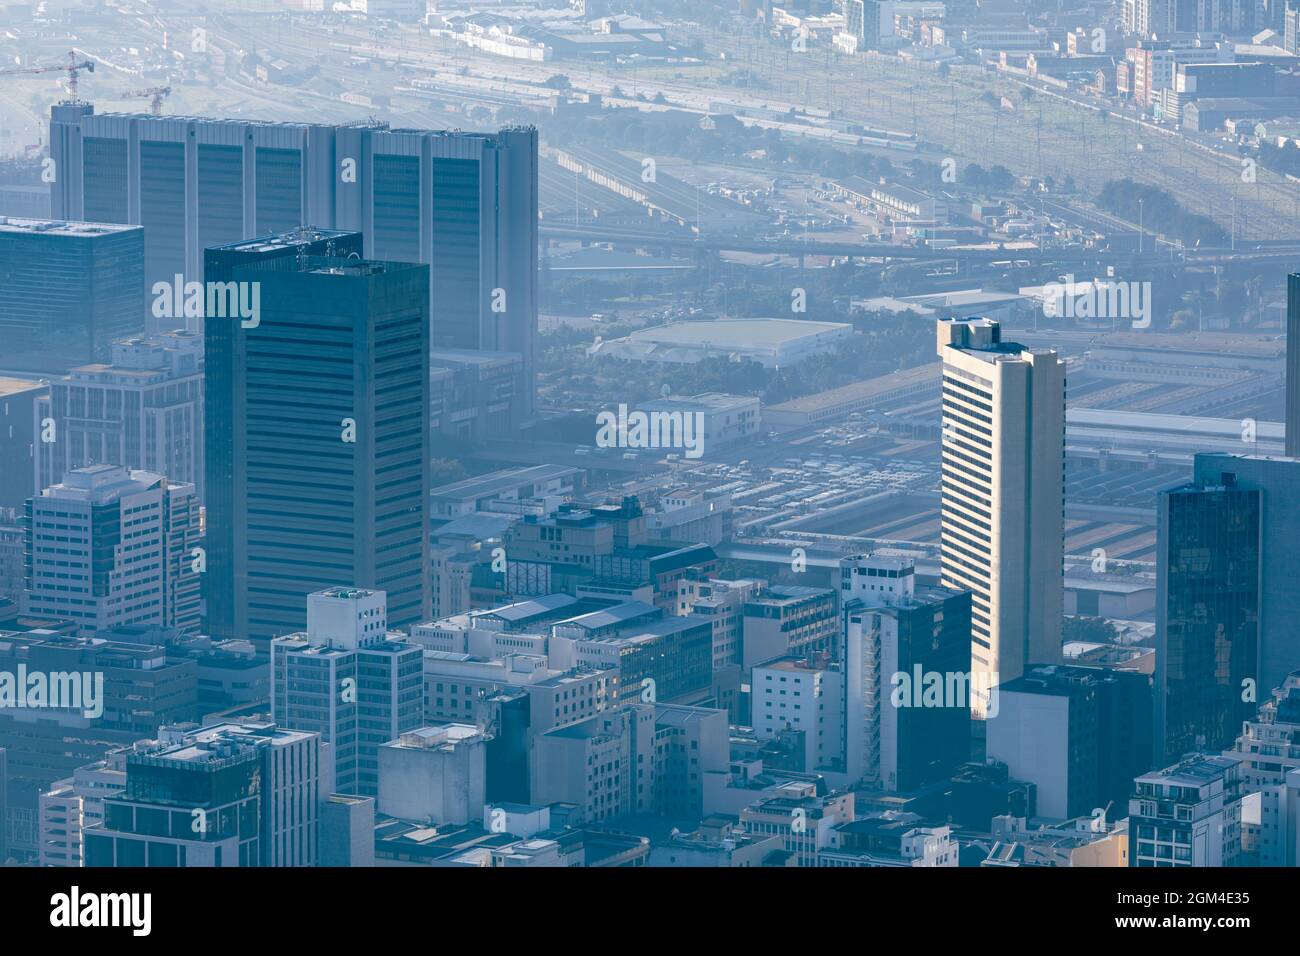 Vue générale sur le paysage urbain avec plusieurs bâtiments modernes et gratte-ciel le matin Banque D'Images